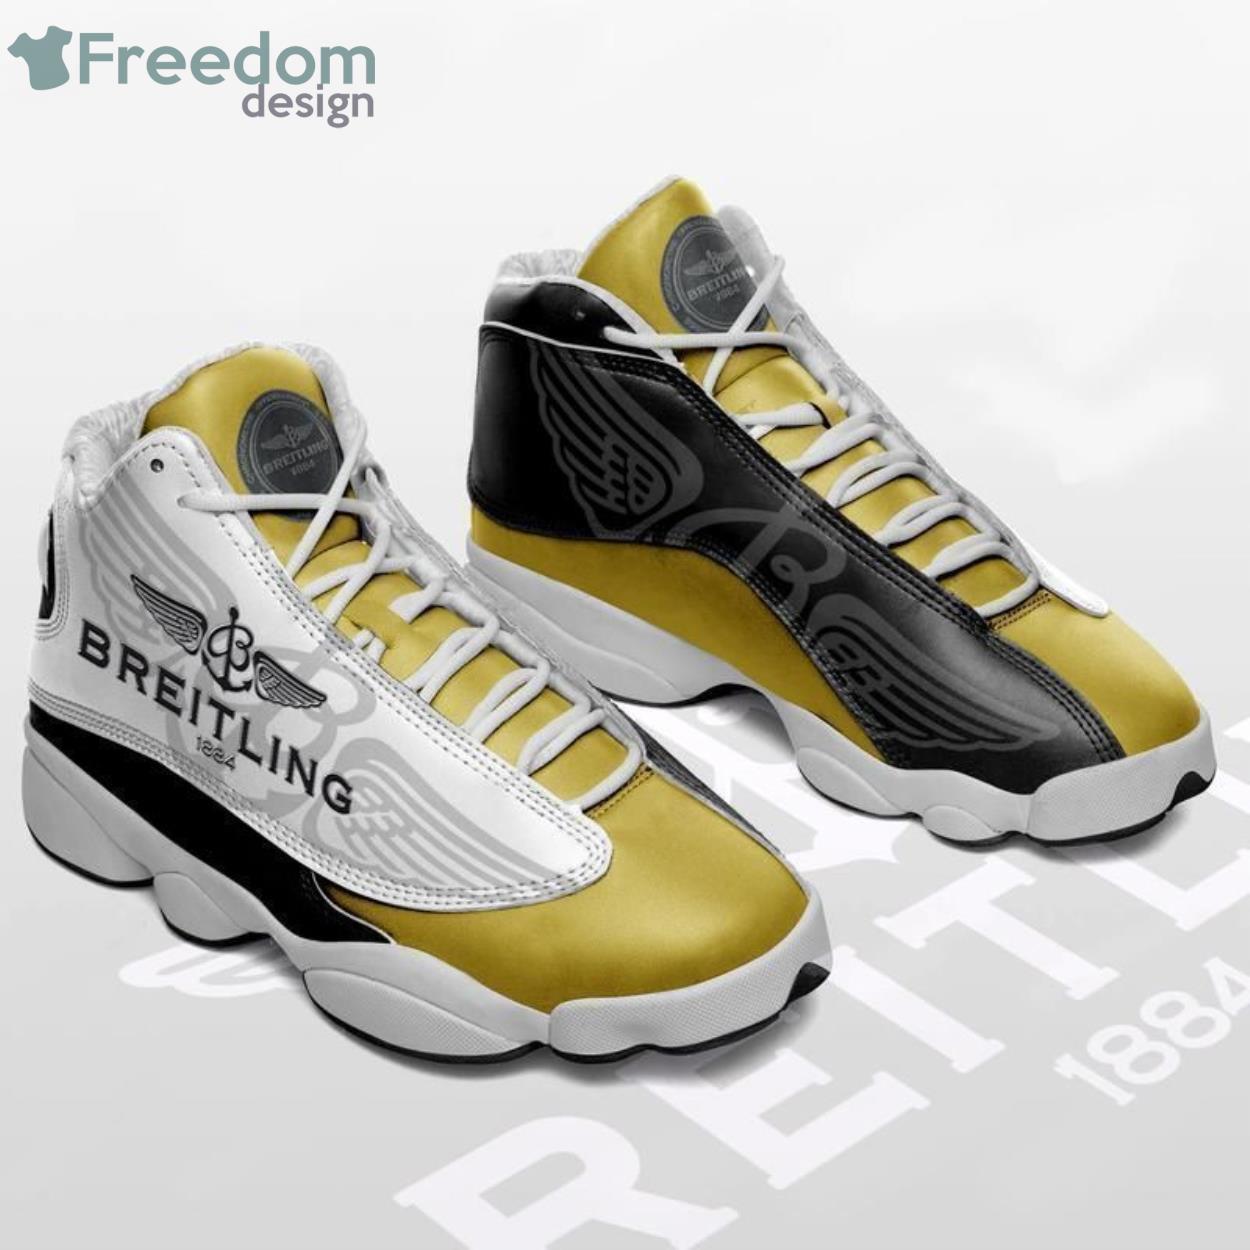 Breitling Sa Form Air Jordan 13 Sneakers Sneakers Personalized